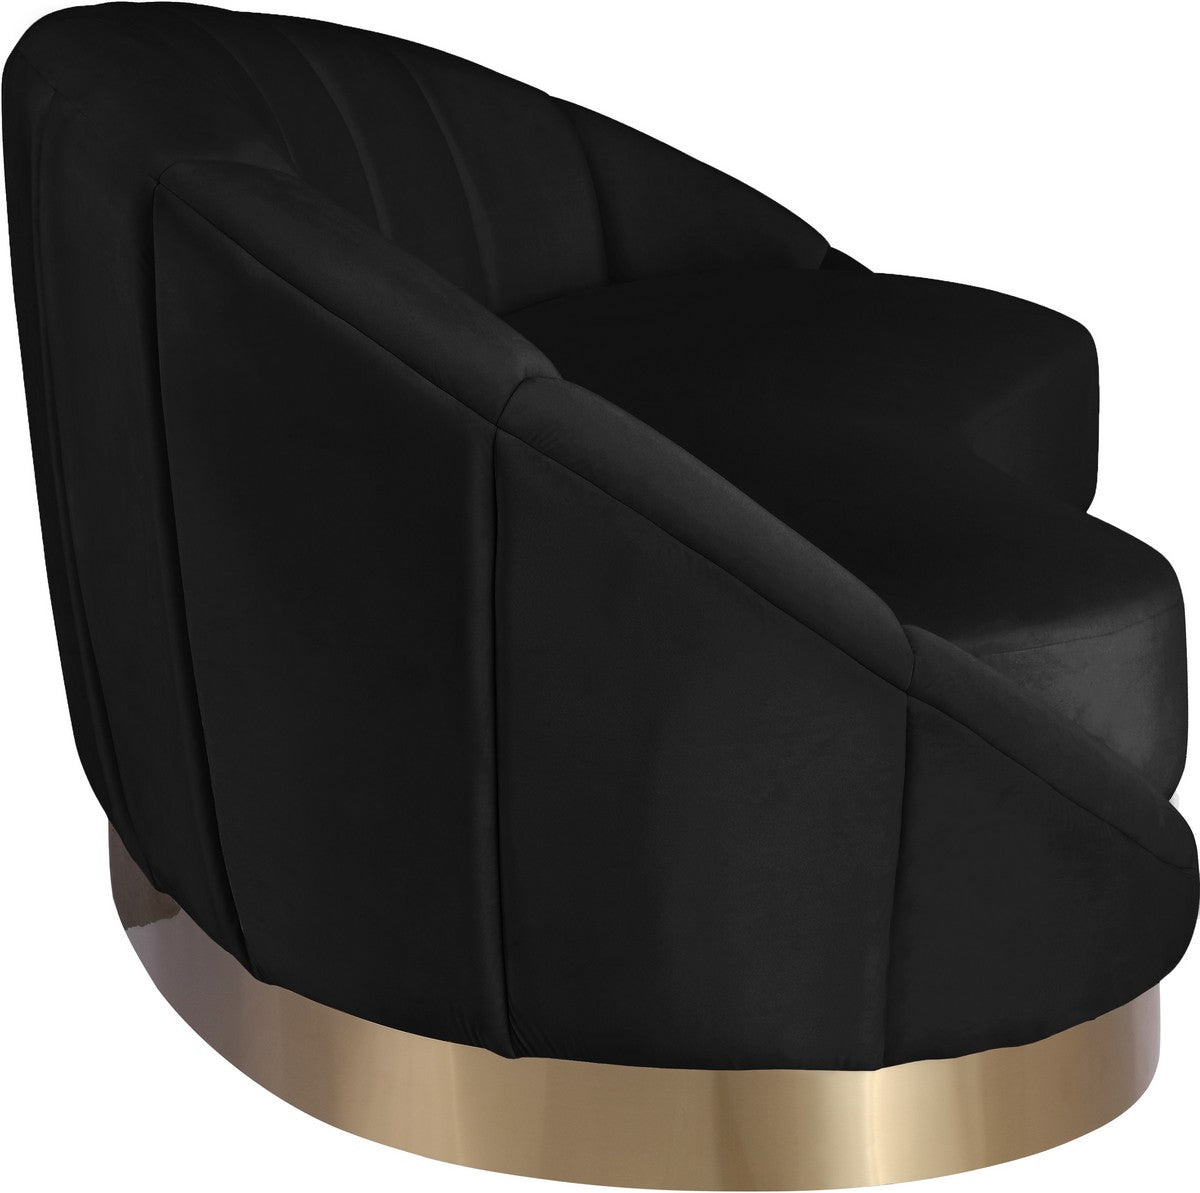 Meridian Furniture Shelly Black Velvet Chaise